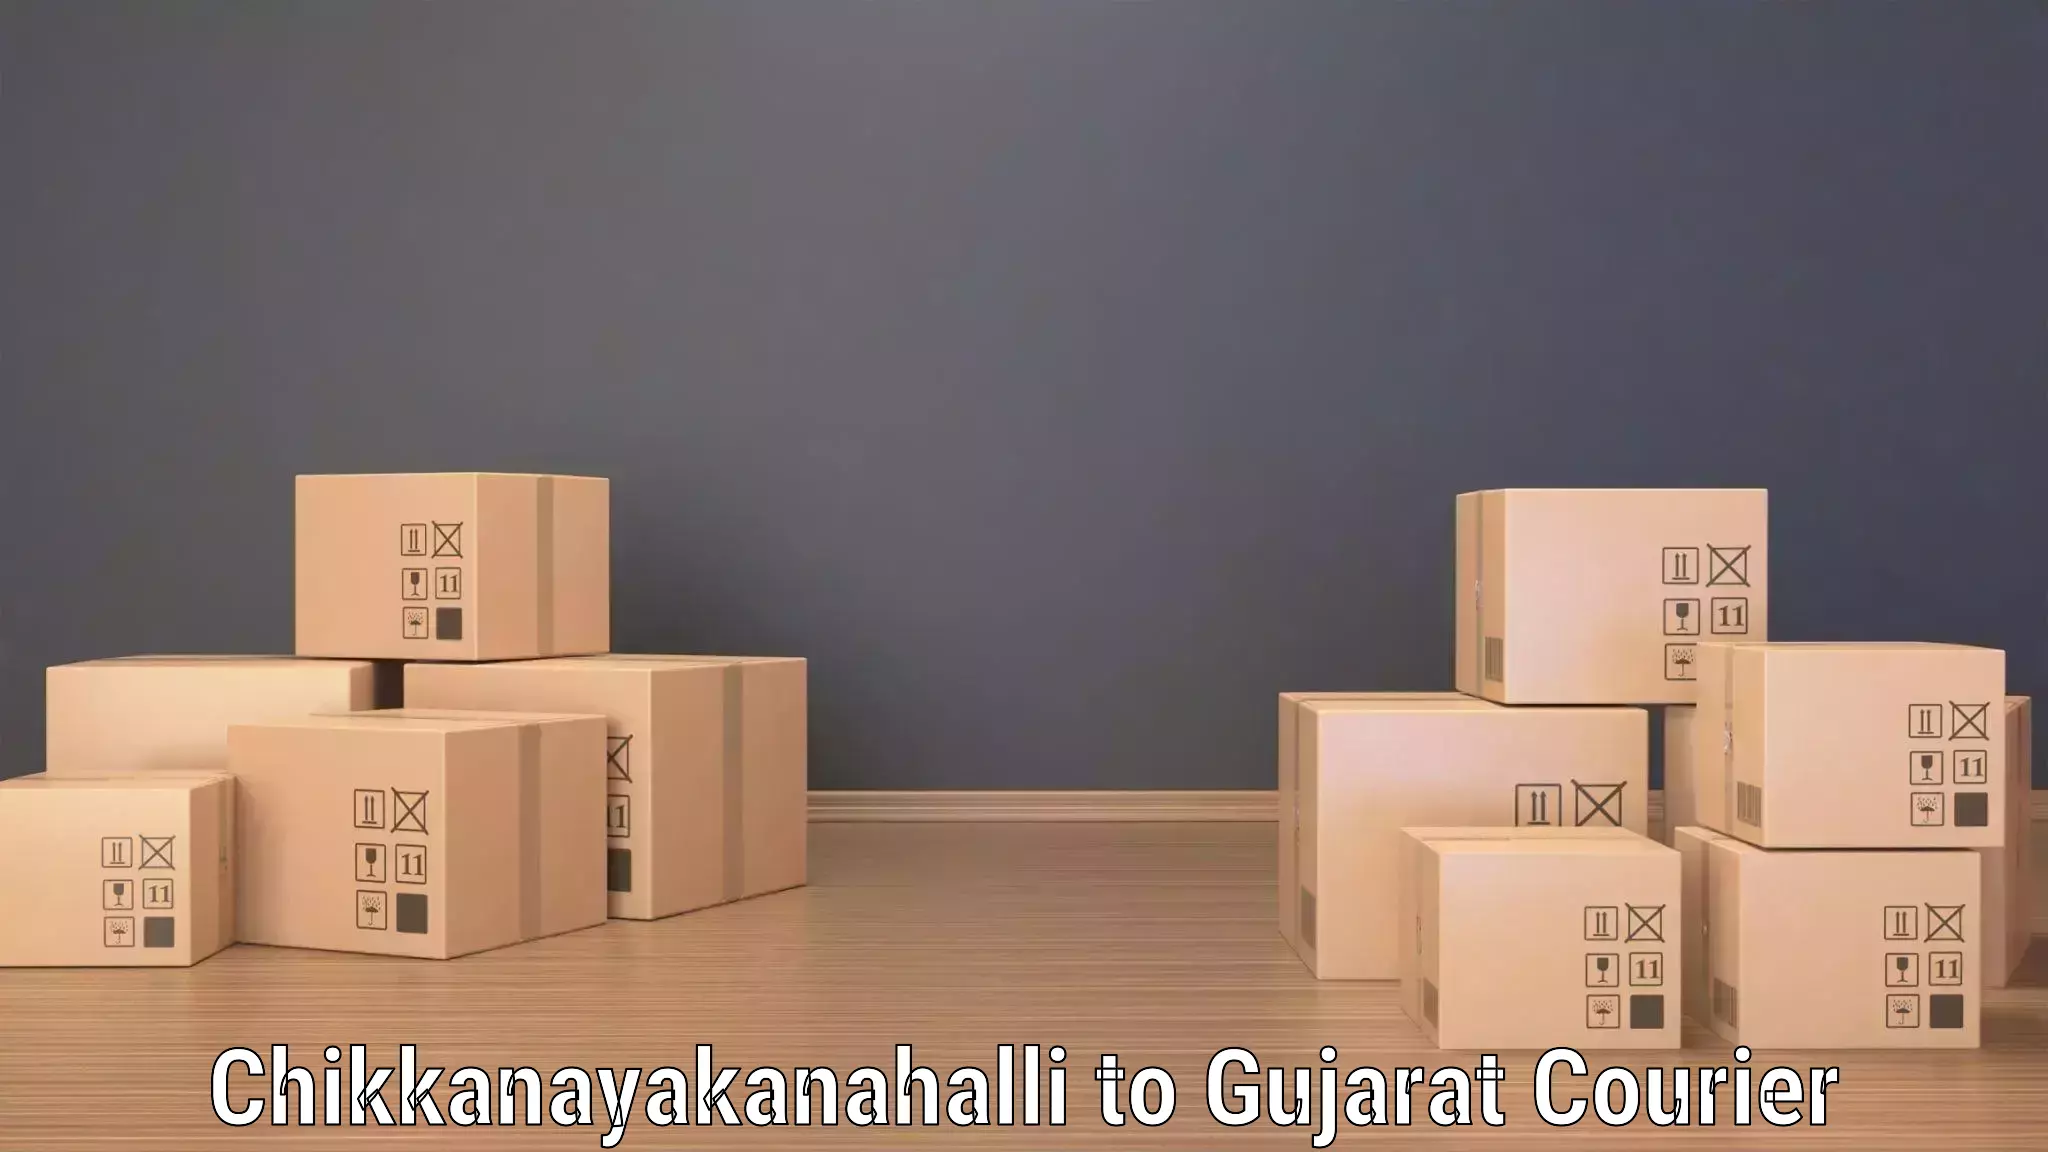 Supply chain efficiency in Chikkanayakanahalli to Rapar